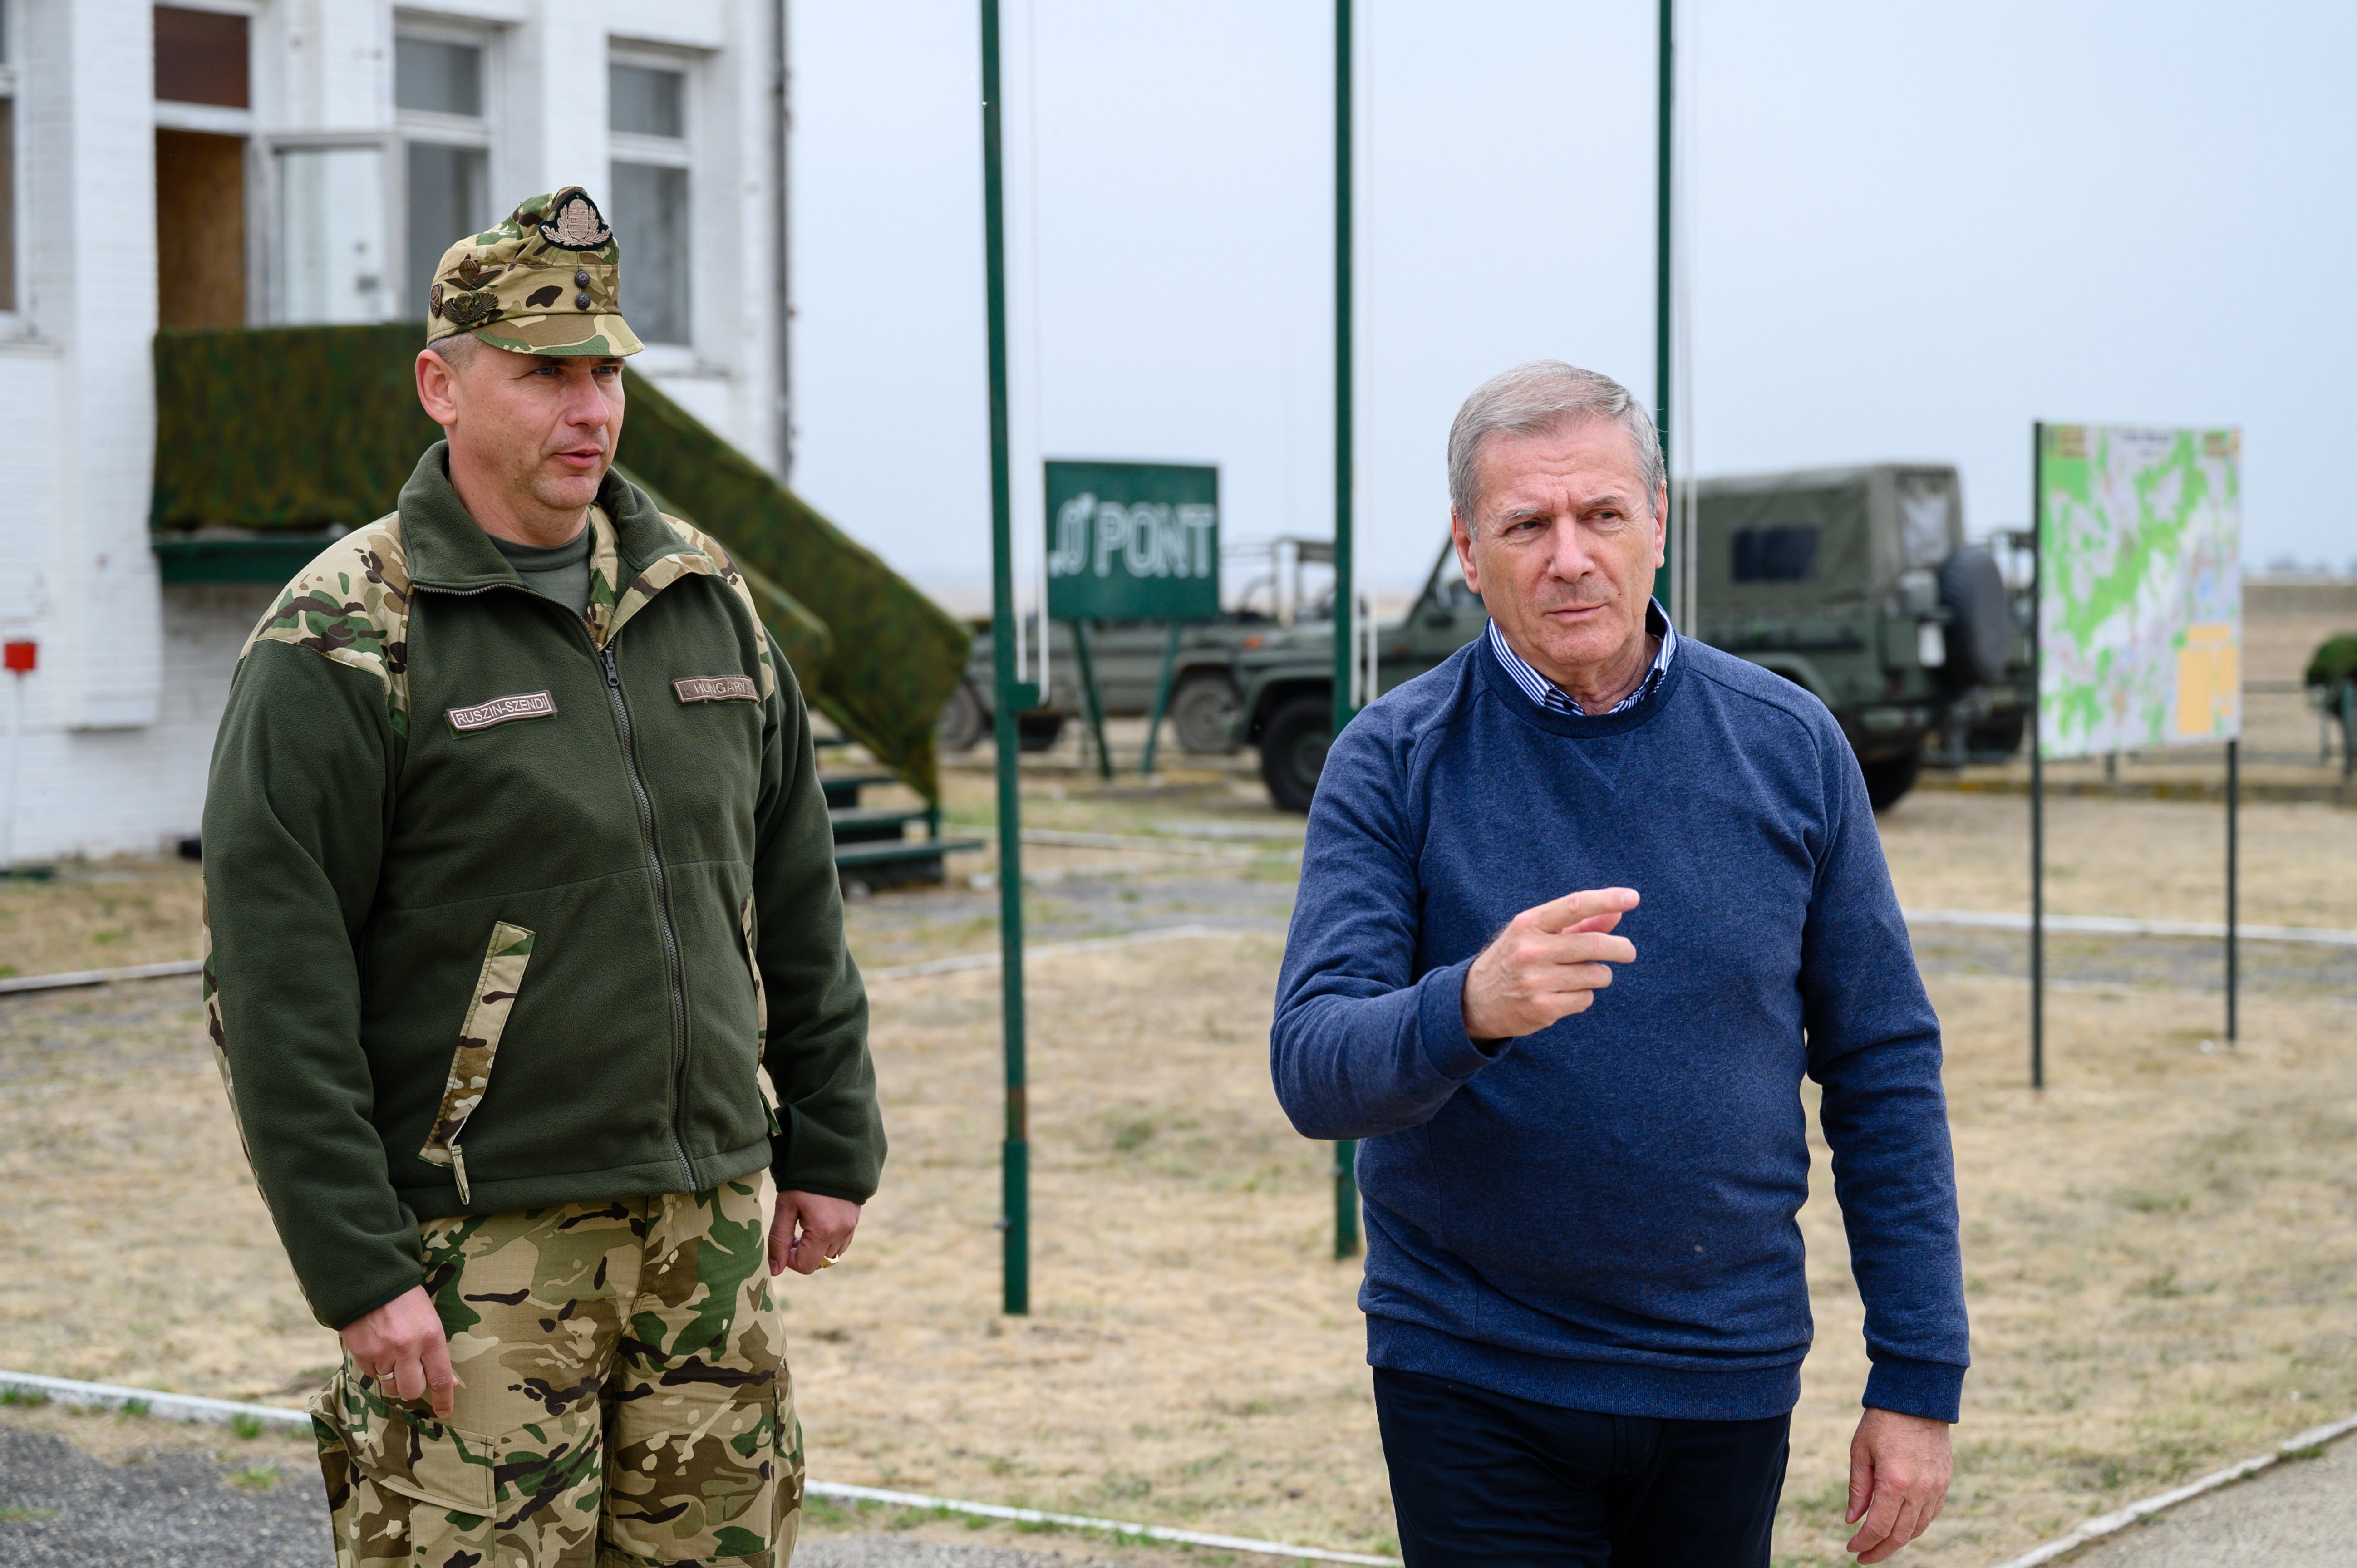 Egy orosz híroldal vezető híre, hogy a magyar honvédelmi miniszter szerint nincs szükség a NATO-ra az ukrajnai helyzet miatt